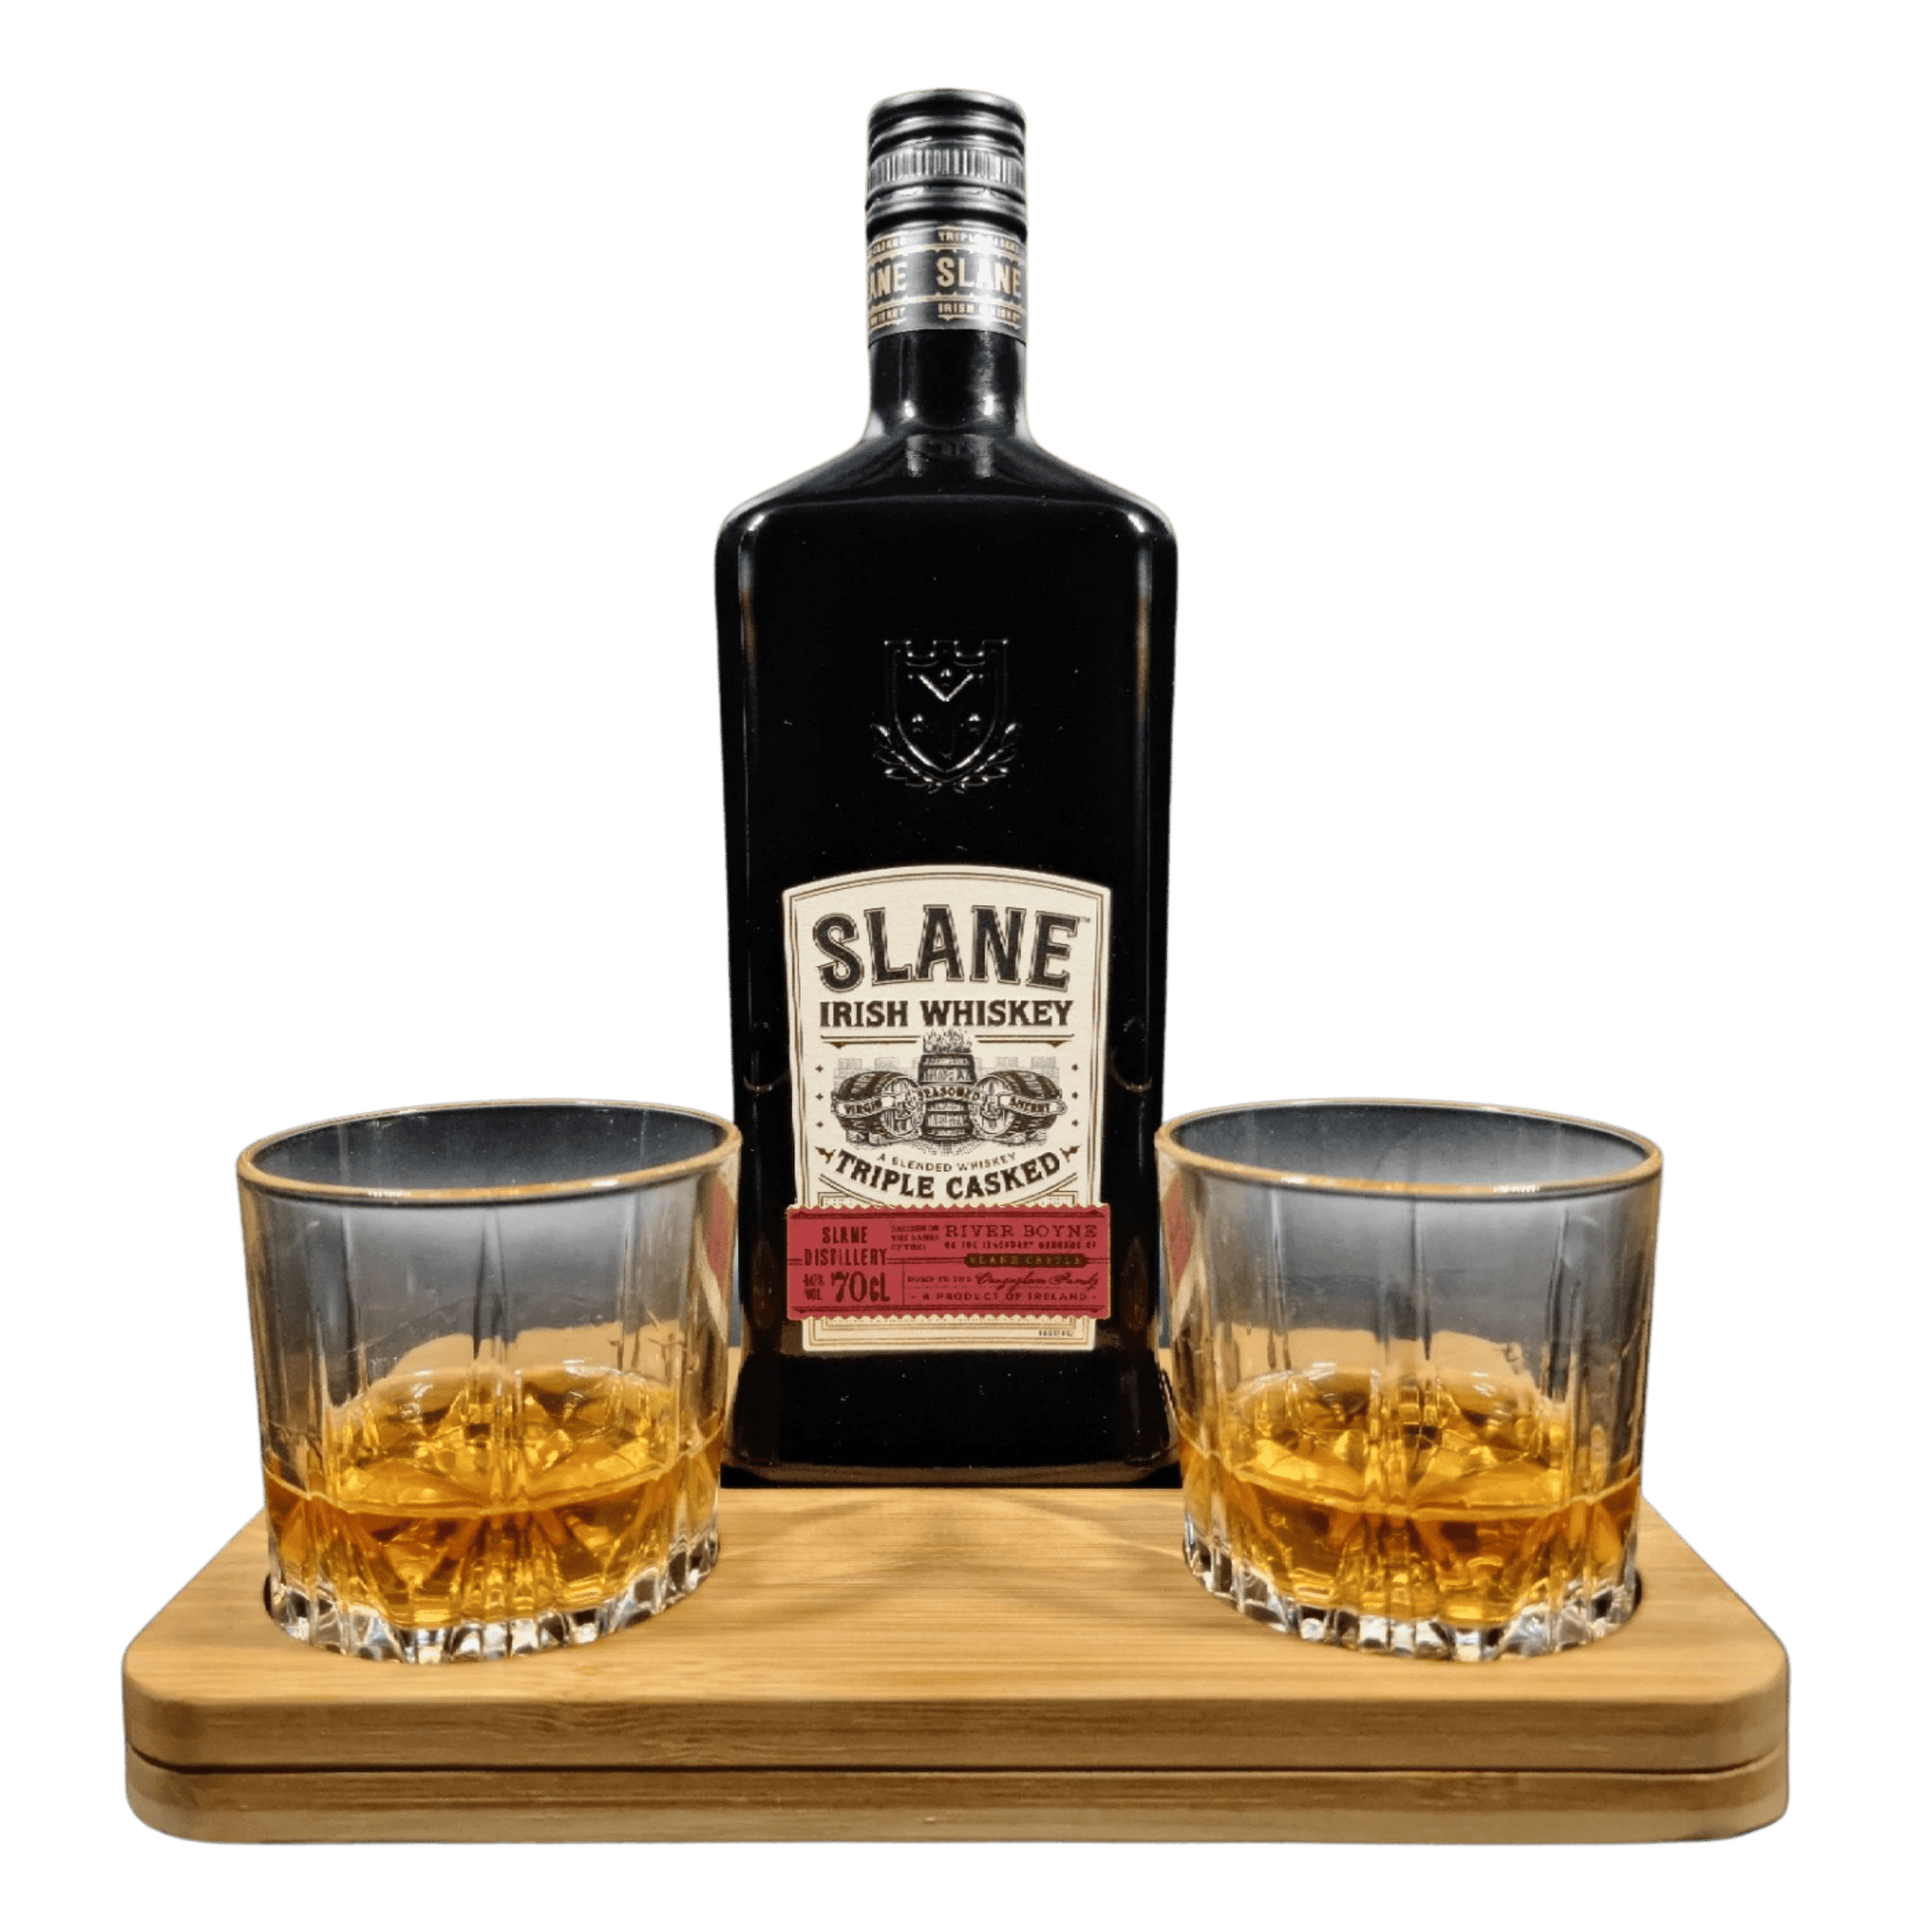 Personalised Slane Irish Whiskey Hamper Gift Box includes 2 whisky glass